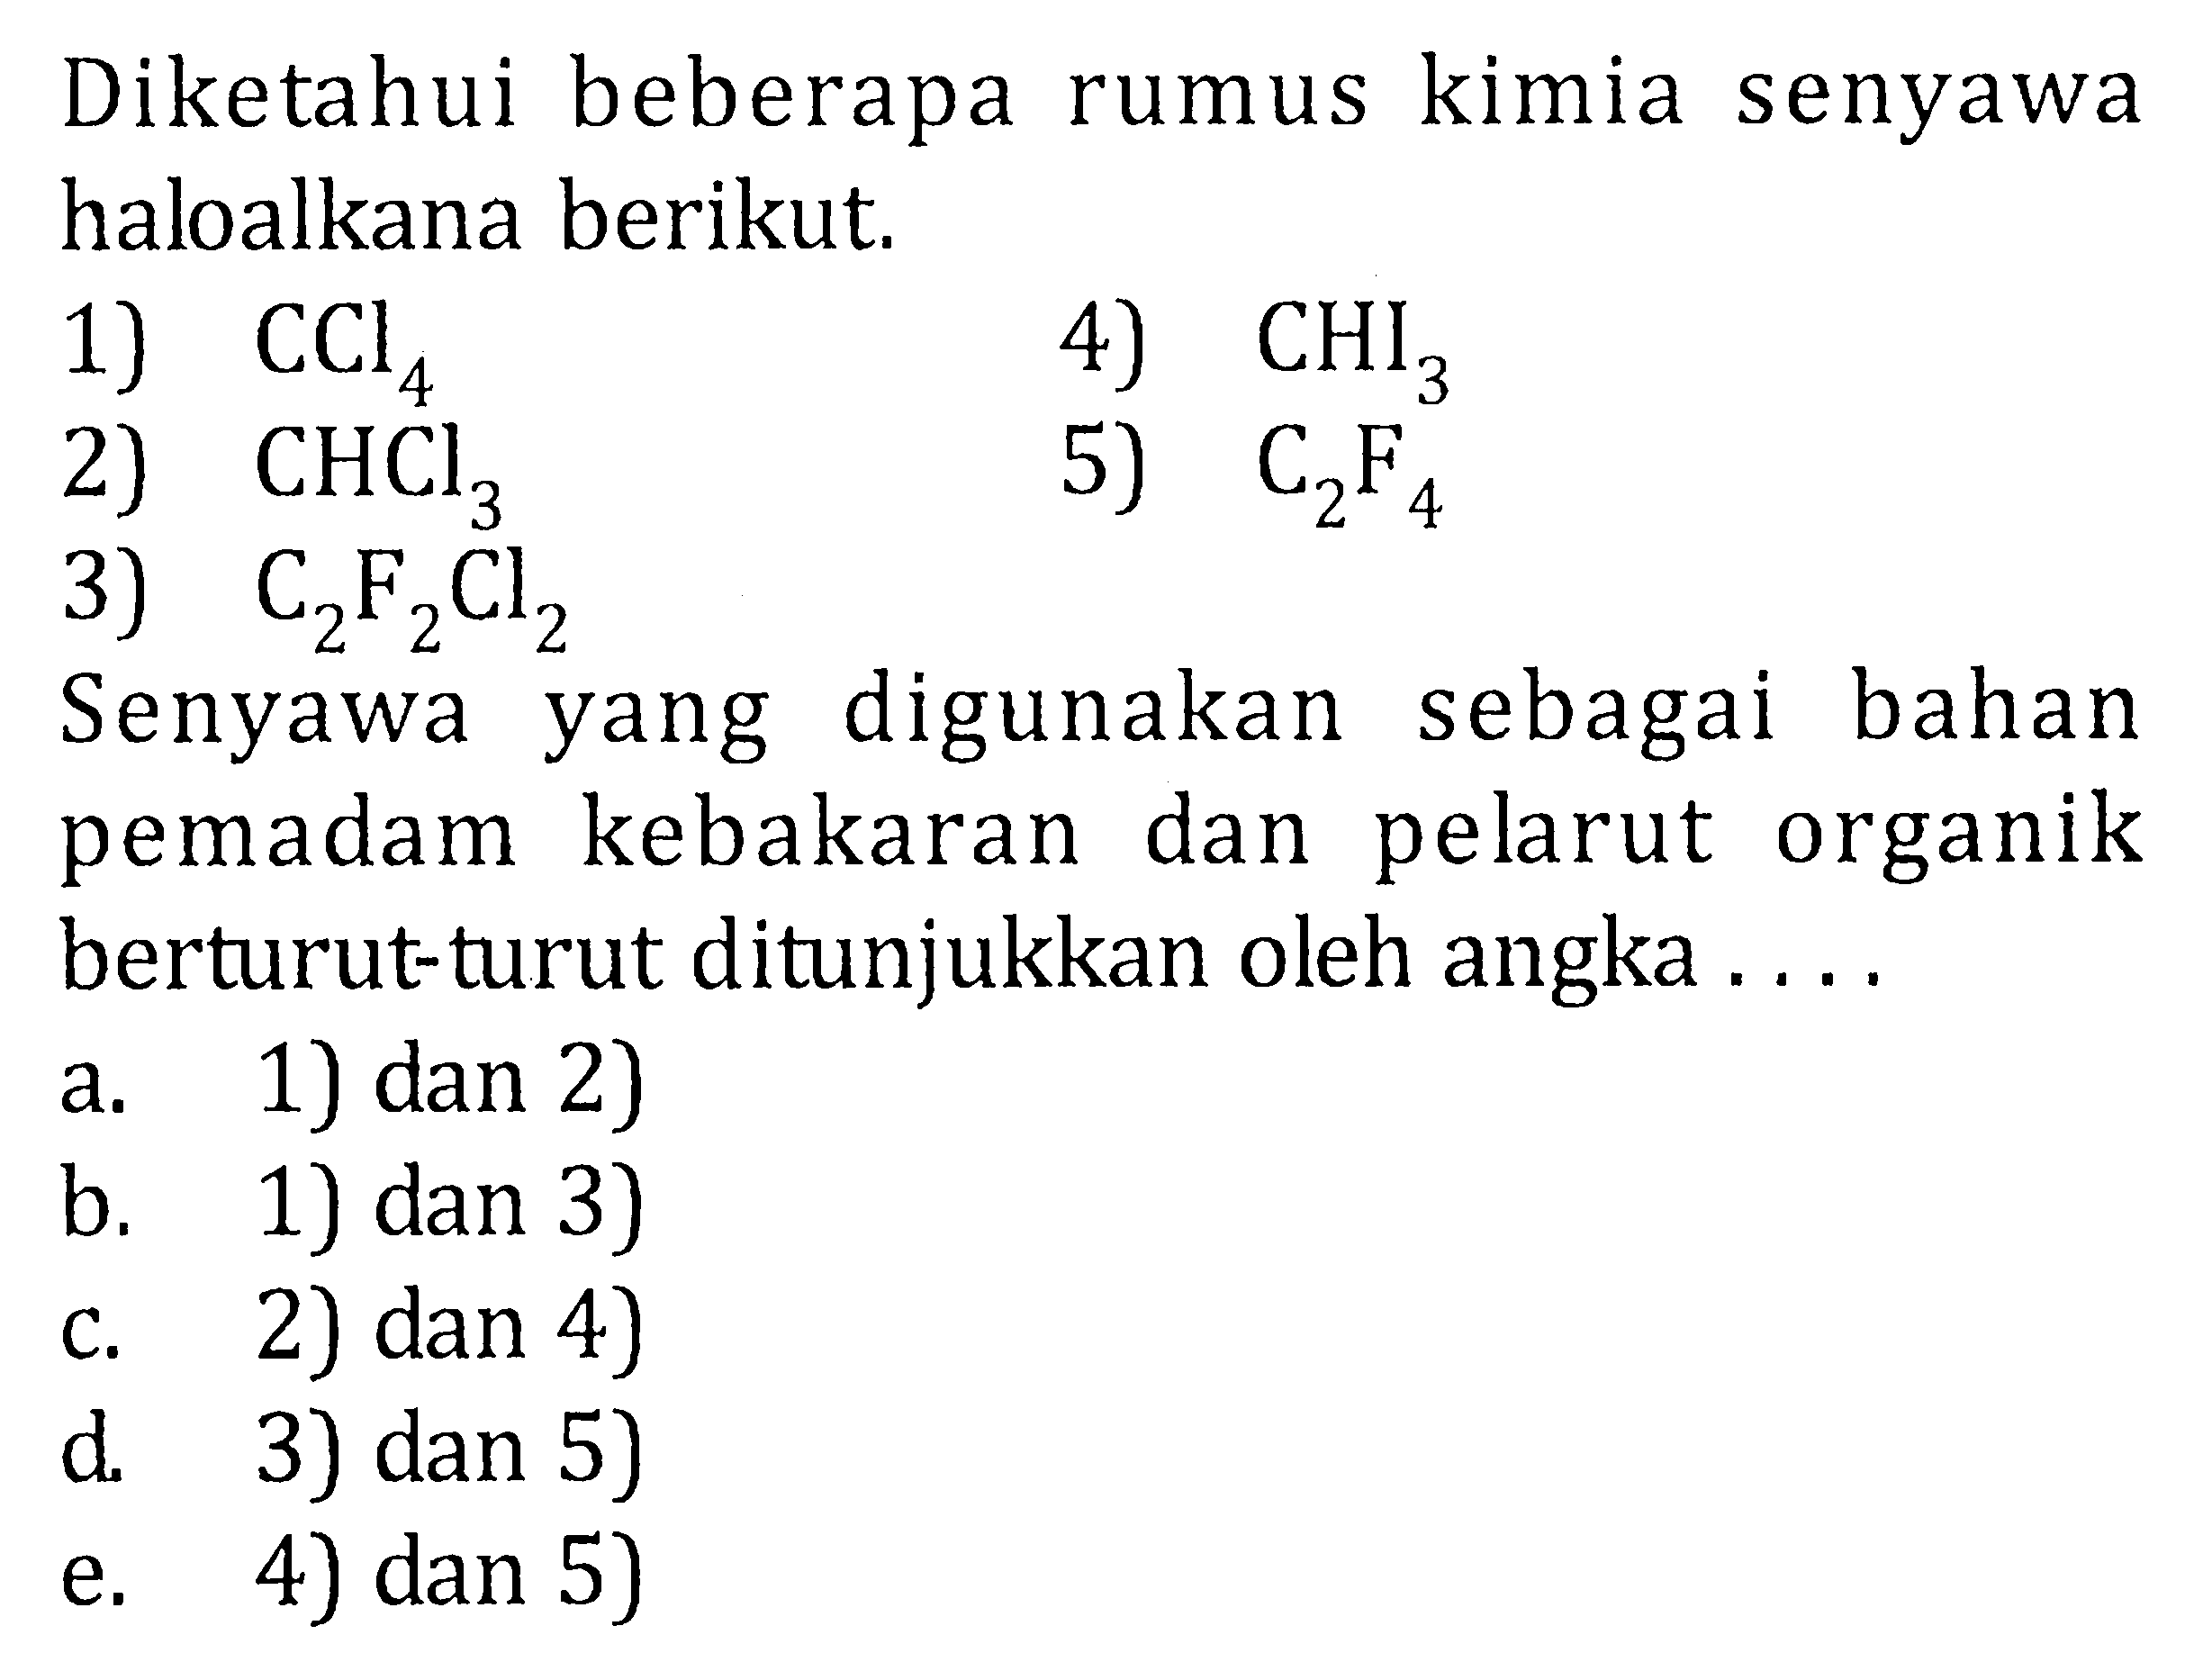 Diketahui beberapa rumus kimia senyawa haloalkana berikut.1) CCl4 4) CHI3 2) CHCl3 5) C2F4 3) C2F2Cl2 Senyawa yang digunakan sebagai bahan pemadam kebakaran dan pelarut organik berturut-turut ditunjukkan oleh angka .... a. 1) dan 2) b. 1) dan 3) c. 2) dan 4) d. 3) dan 5) e. 4) dan 5)